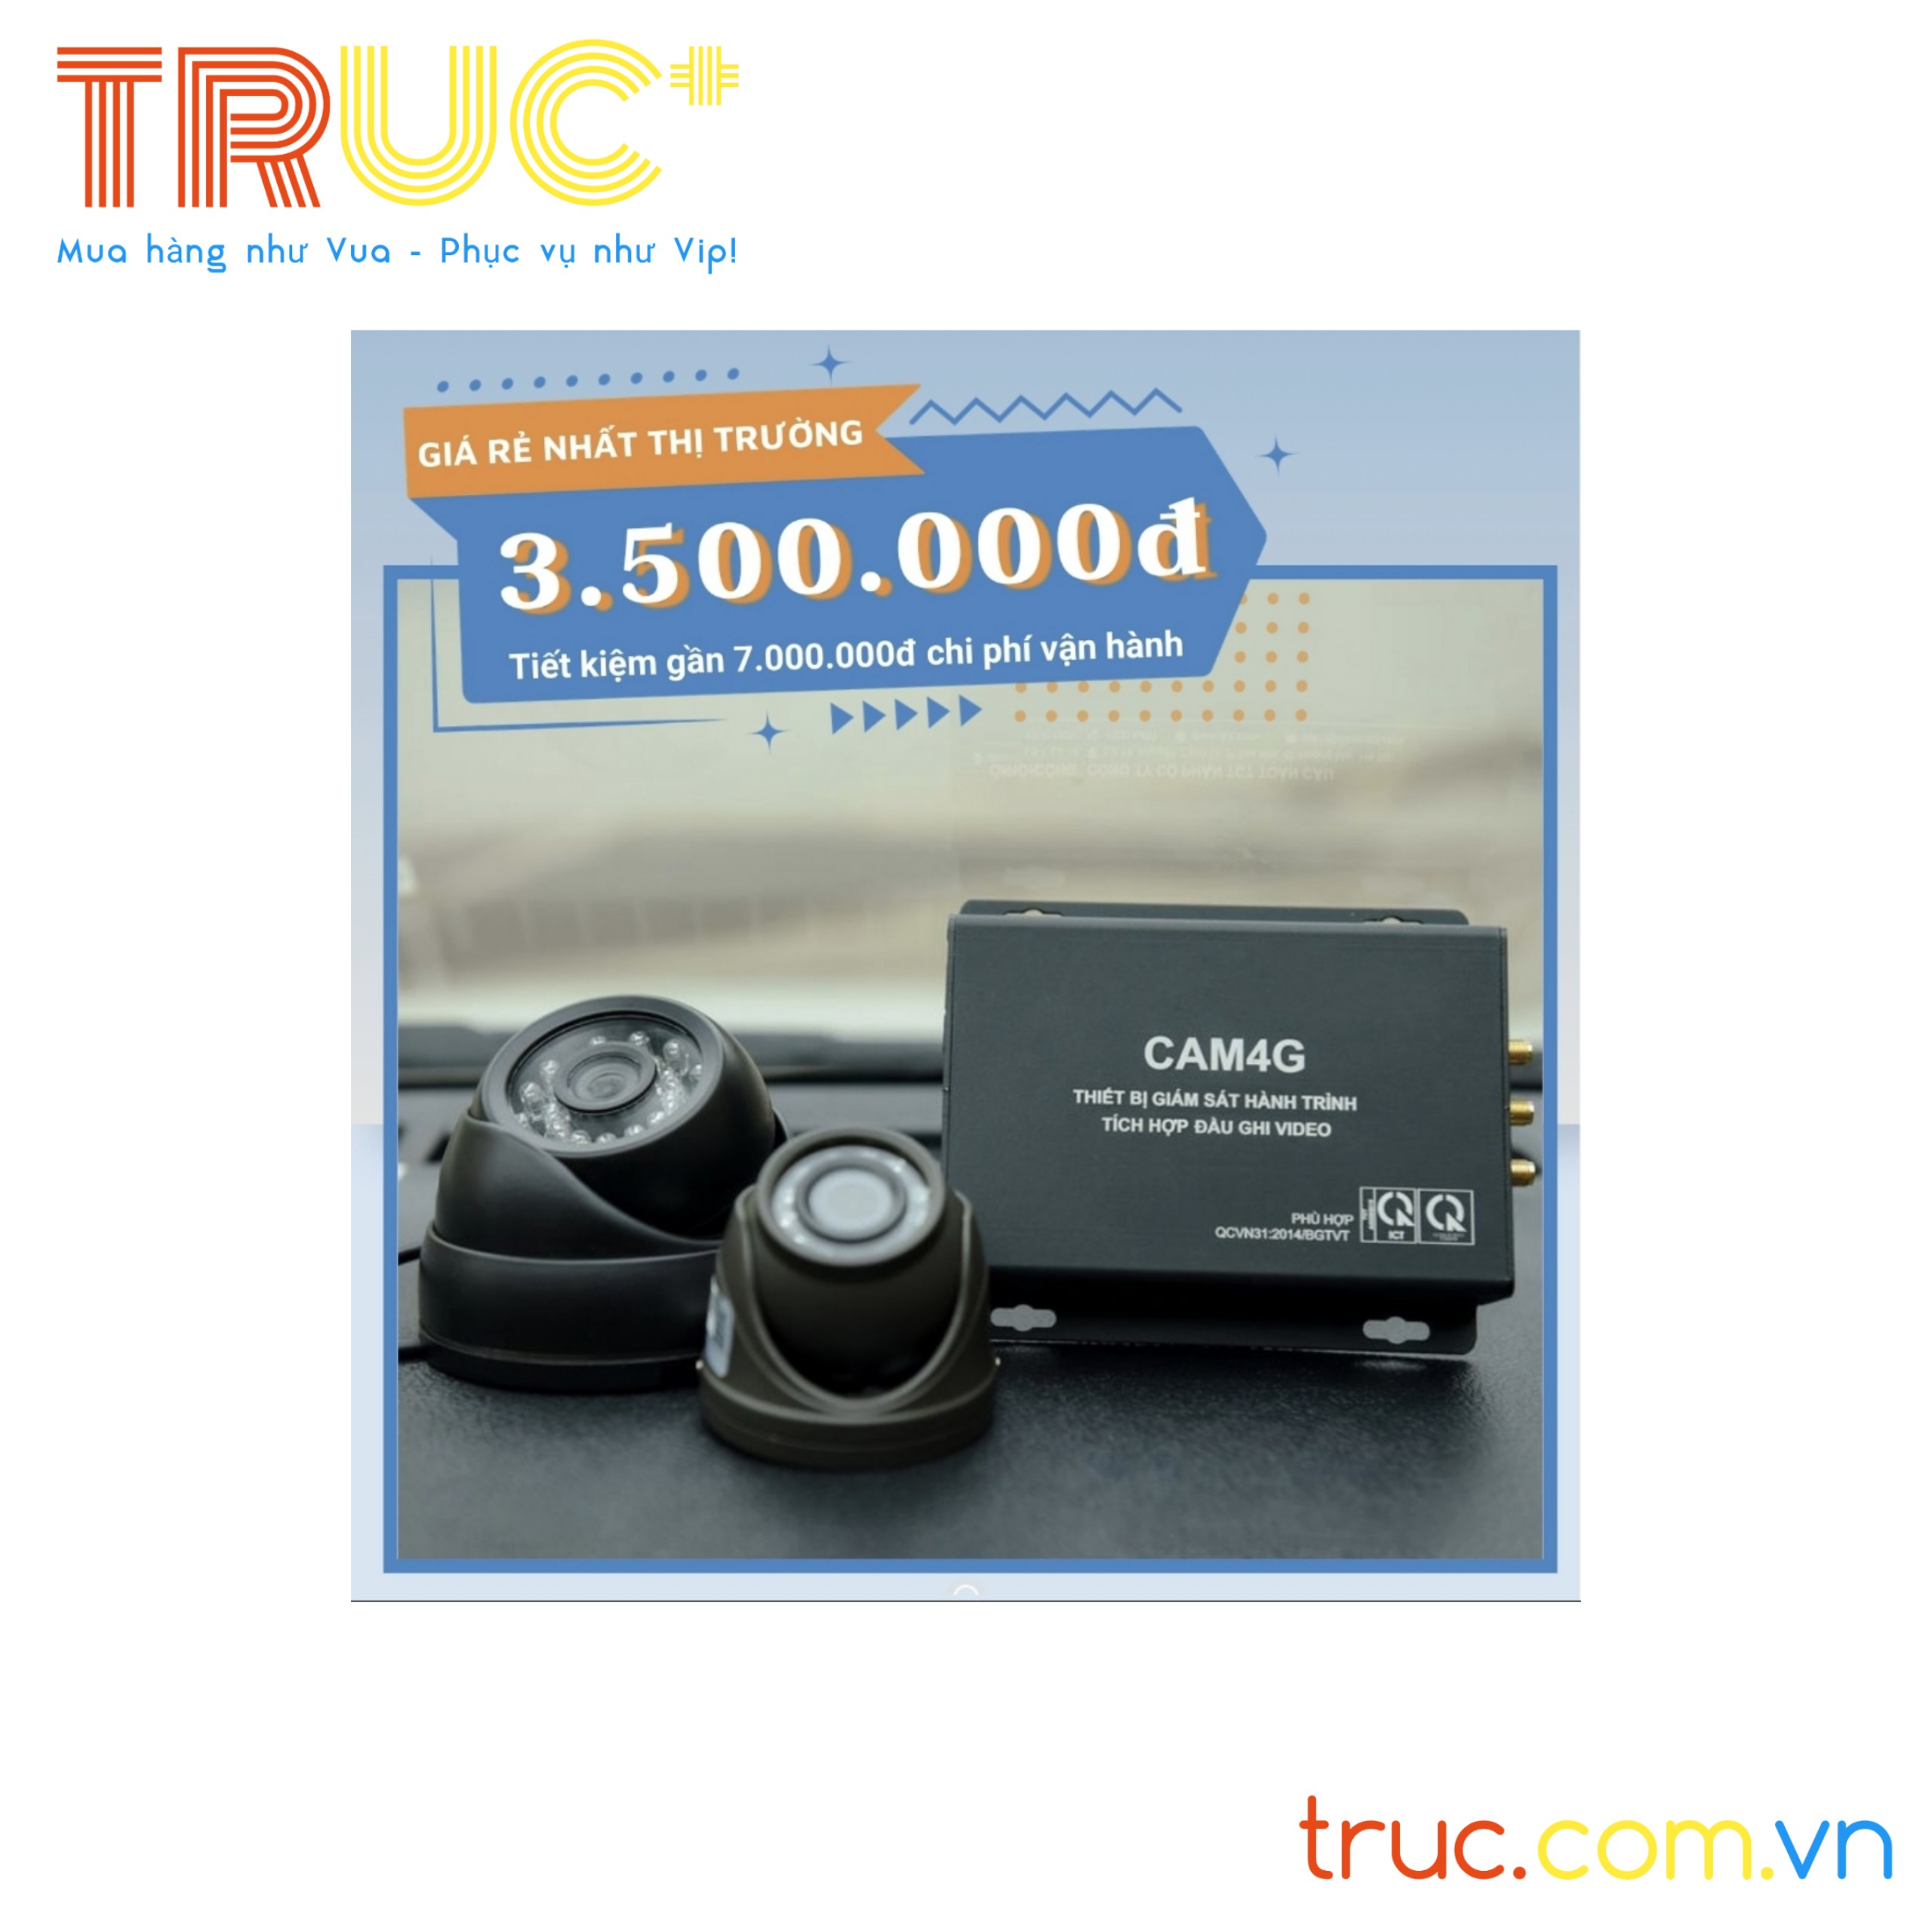 CAM4G | Đầu ghi camera giám sát hành trình xe đạt quy chuẩn hợp quy hợp chuẩn | Nghị định 10/2020/NĐ-CP